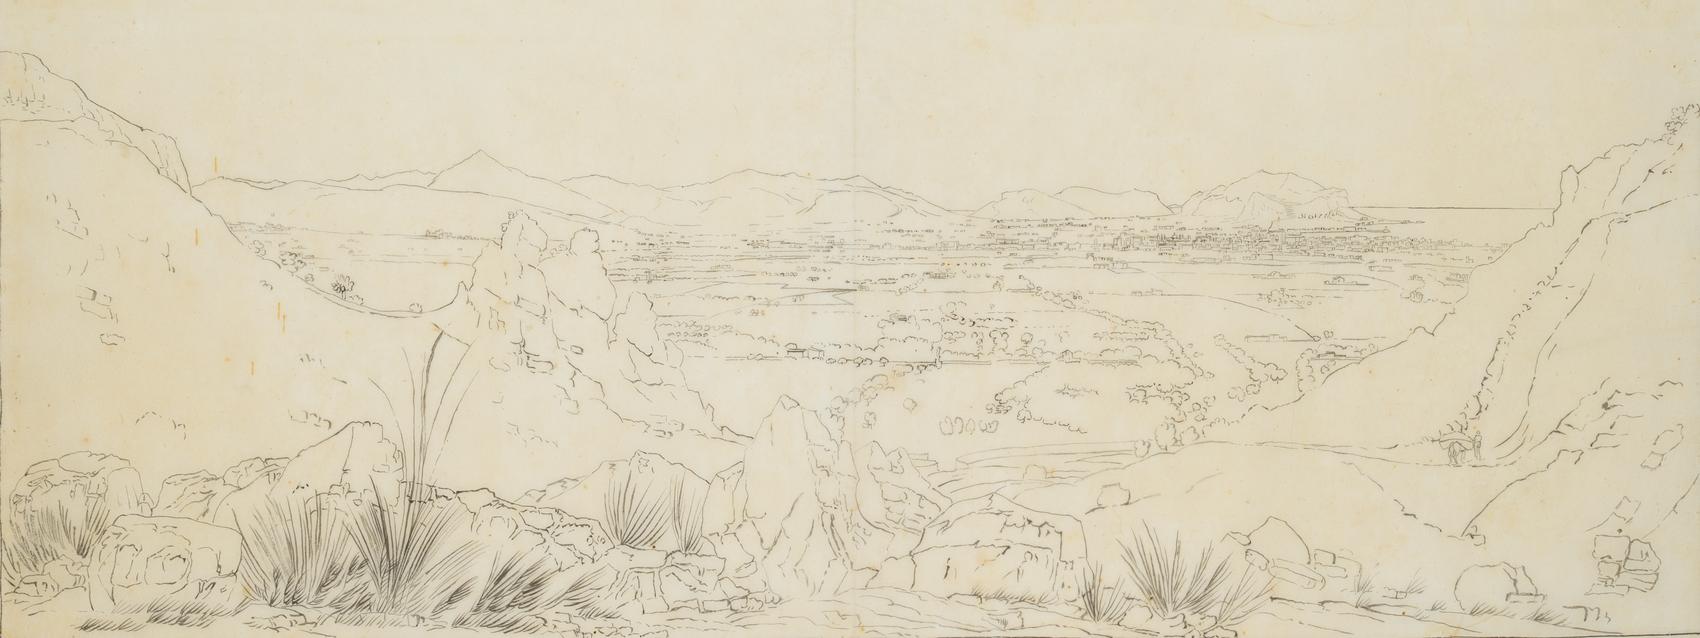 Landschaftspanorama von Syrakus